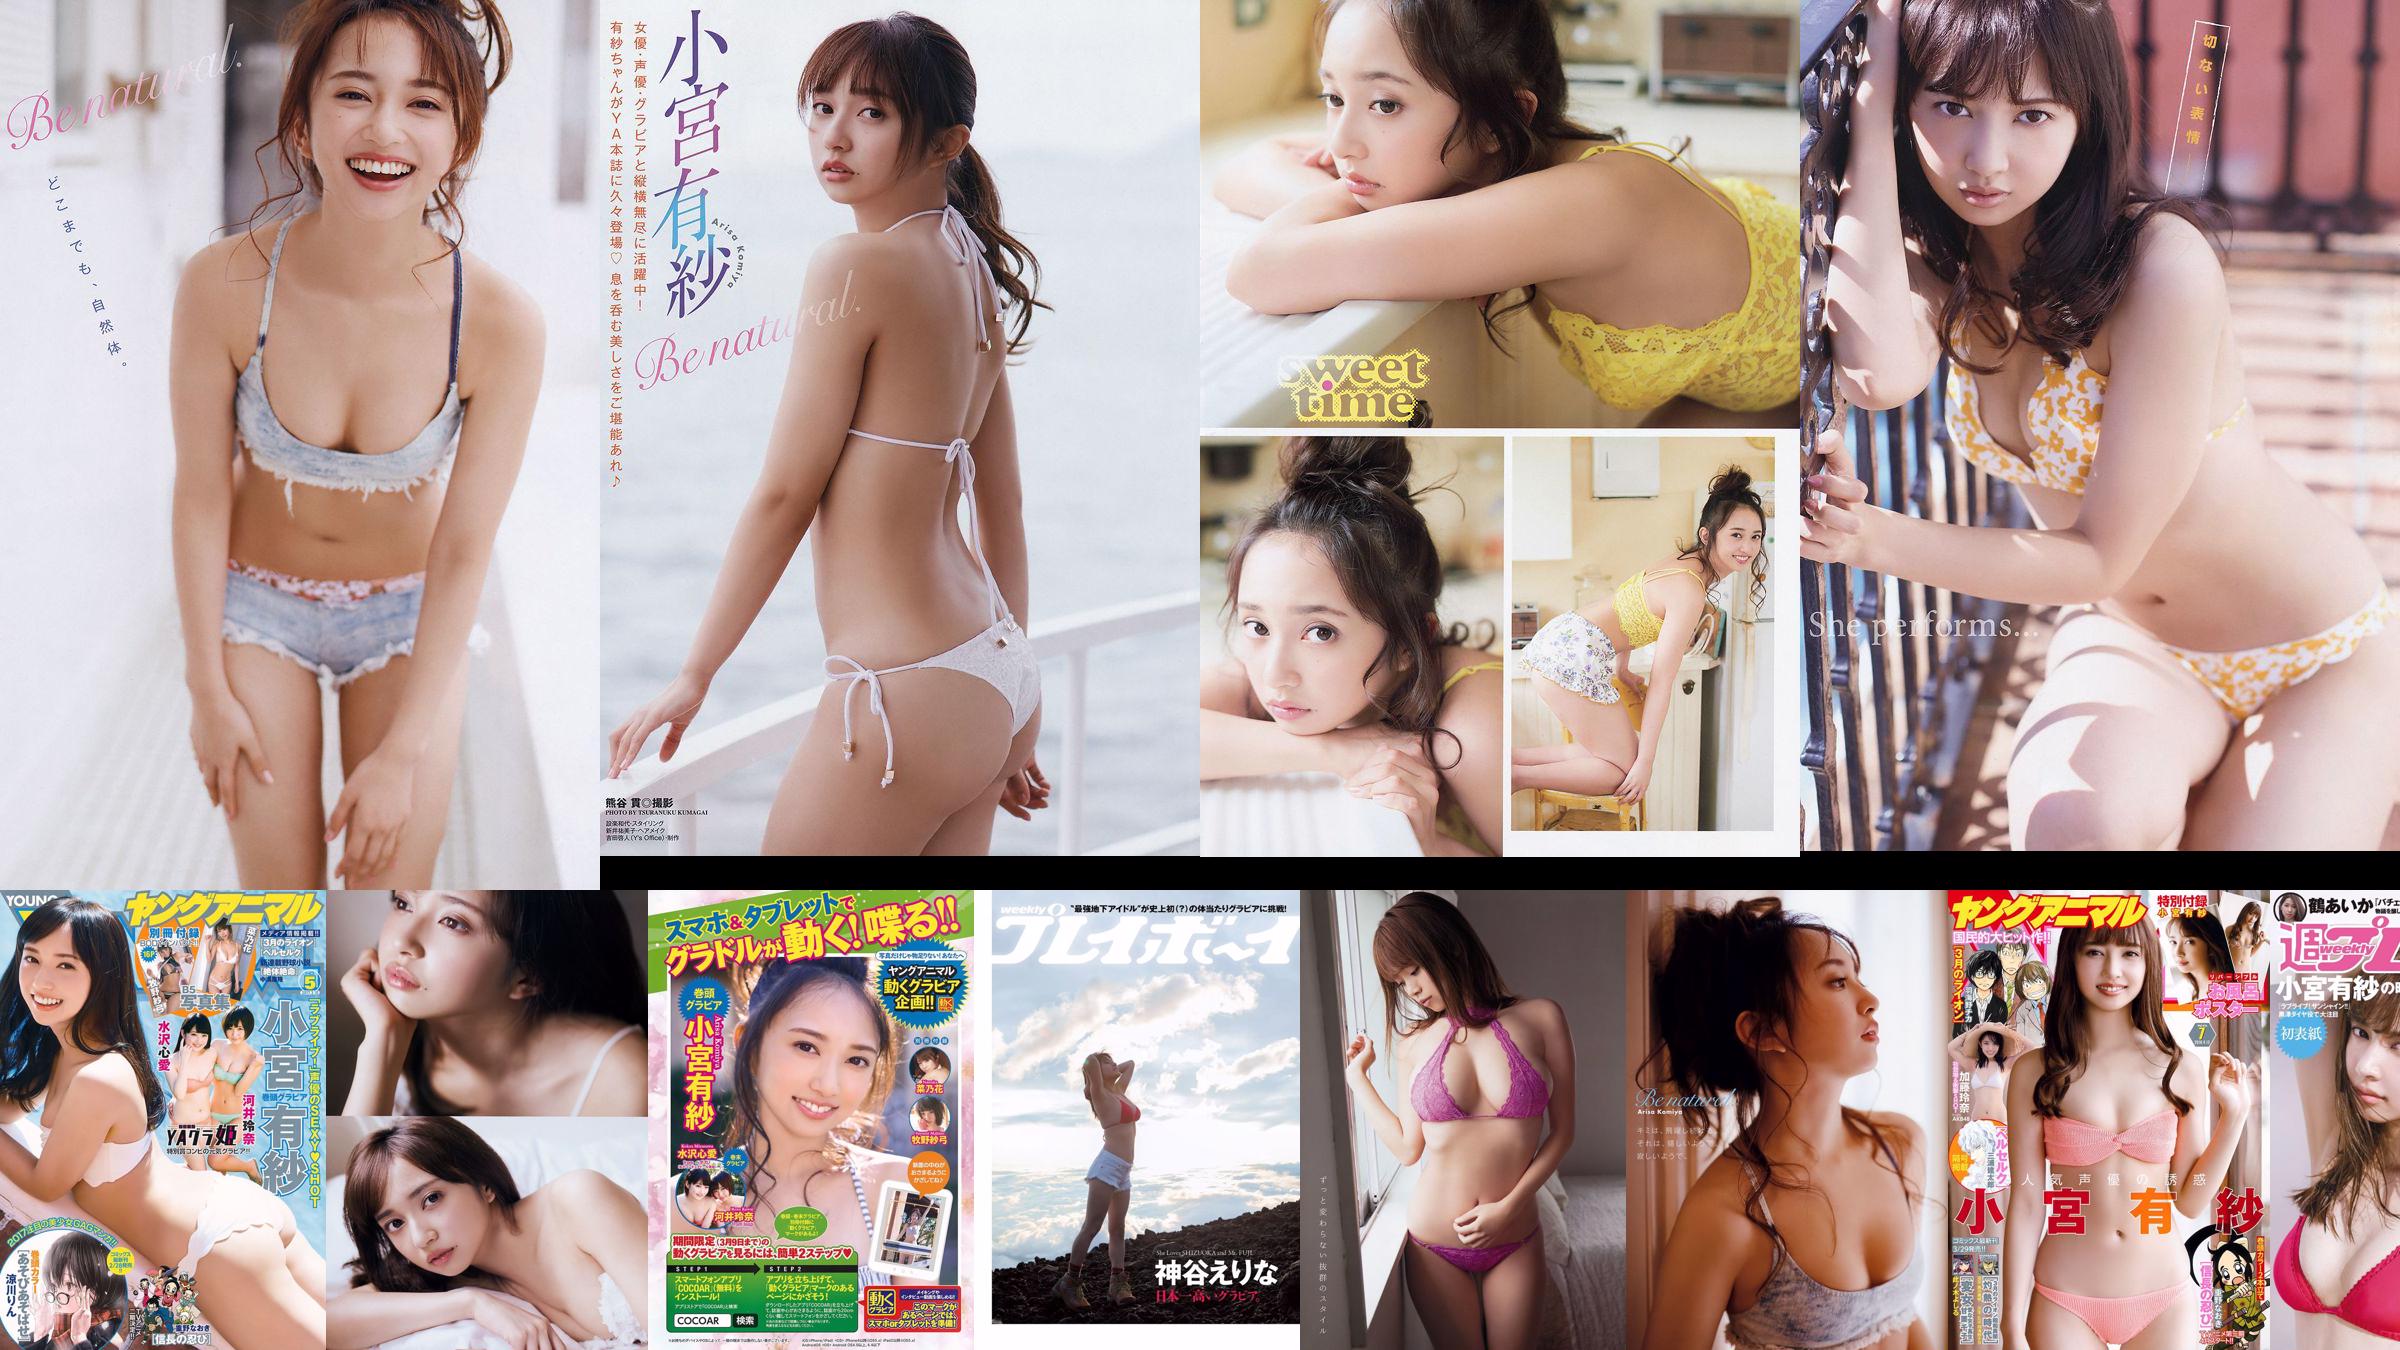 Arisa Komiya Aya Asahina Yuuna Suzuki Miwako Kakei STU48 Honoka Mai Hakase Riho Yoshioka [Playboy semanal] 2018 No.07 Foto Miwako No.55d9b8 Página 1